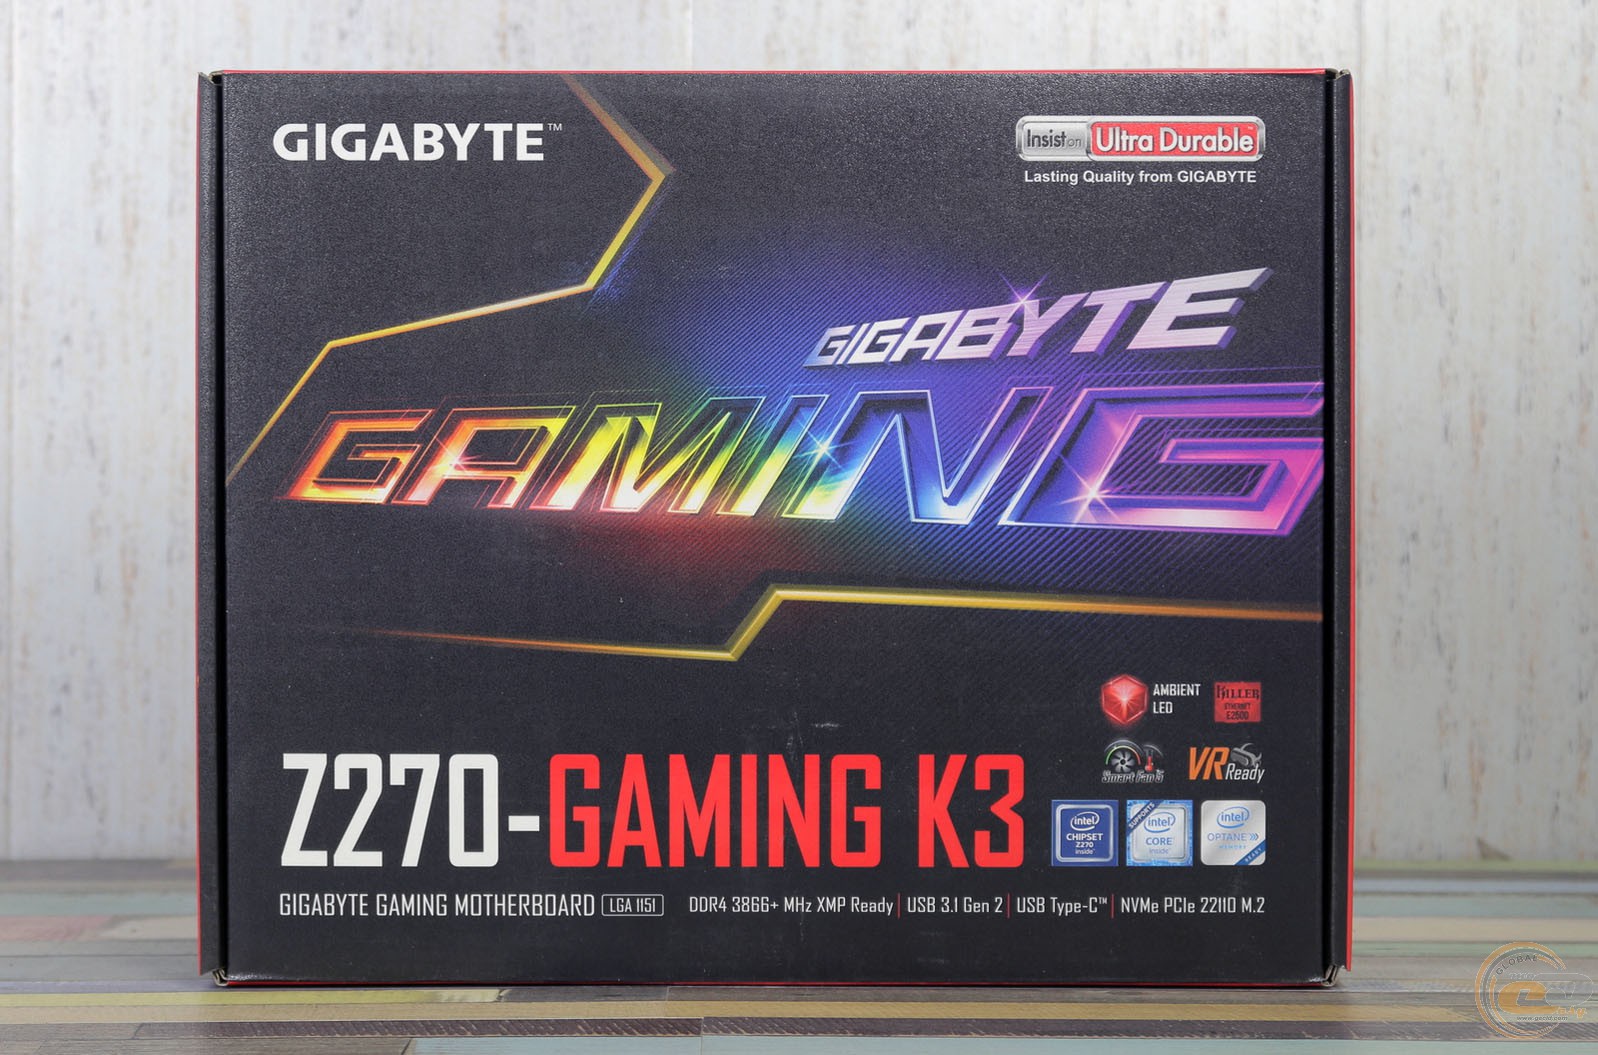 Gigabyte games k3. Gigabyte z270 Gaming k3. Gigabyte ga-z270-Gaming k3. Gigabyte Ultra durable Core 2 Dua. Gigabyte insist on Ultra durable желтый цвет BIOS.